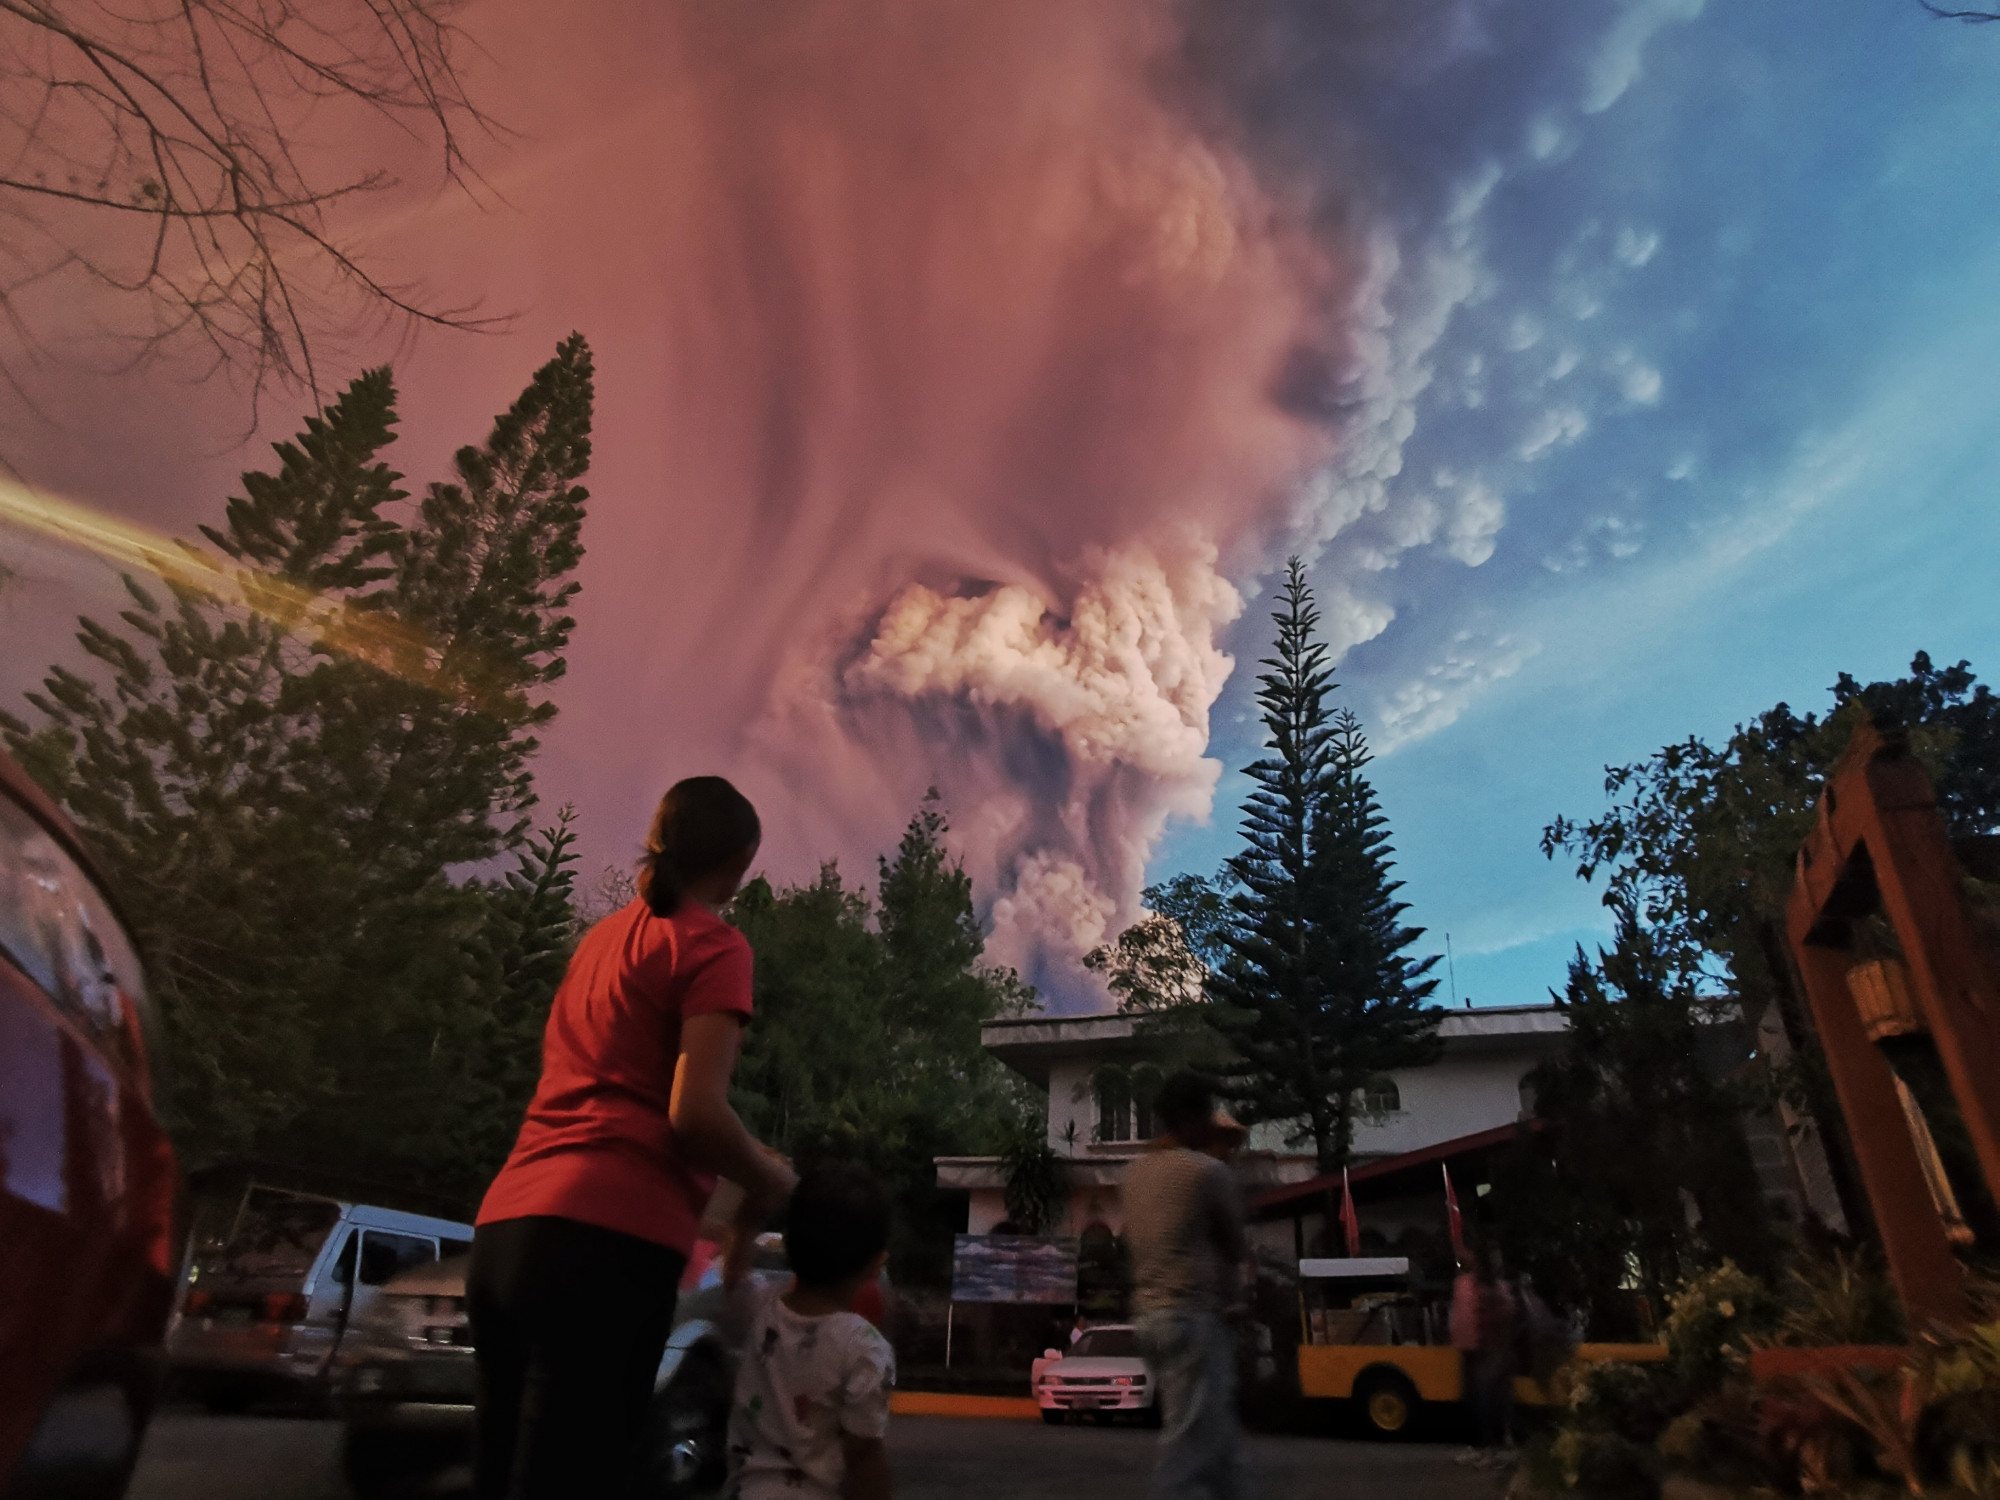 Núi lửa Taal “thức giấc” từ chiều chủ nhật 12 tháng 1 năm 2020, phun tro cao cả ngàn mét lên không trung, buộc các cộng đồng gần đó phải di tản để tránh một vụ phun trào mạnh mẽ hơn sắp xảy ra. Hình của Kester Ragaza (Pacific Press / Shutterstock)